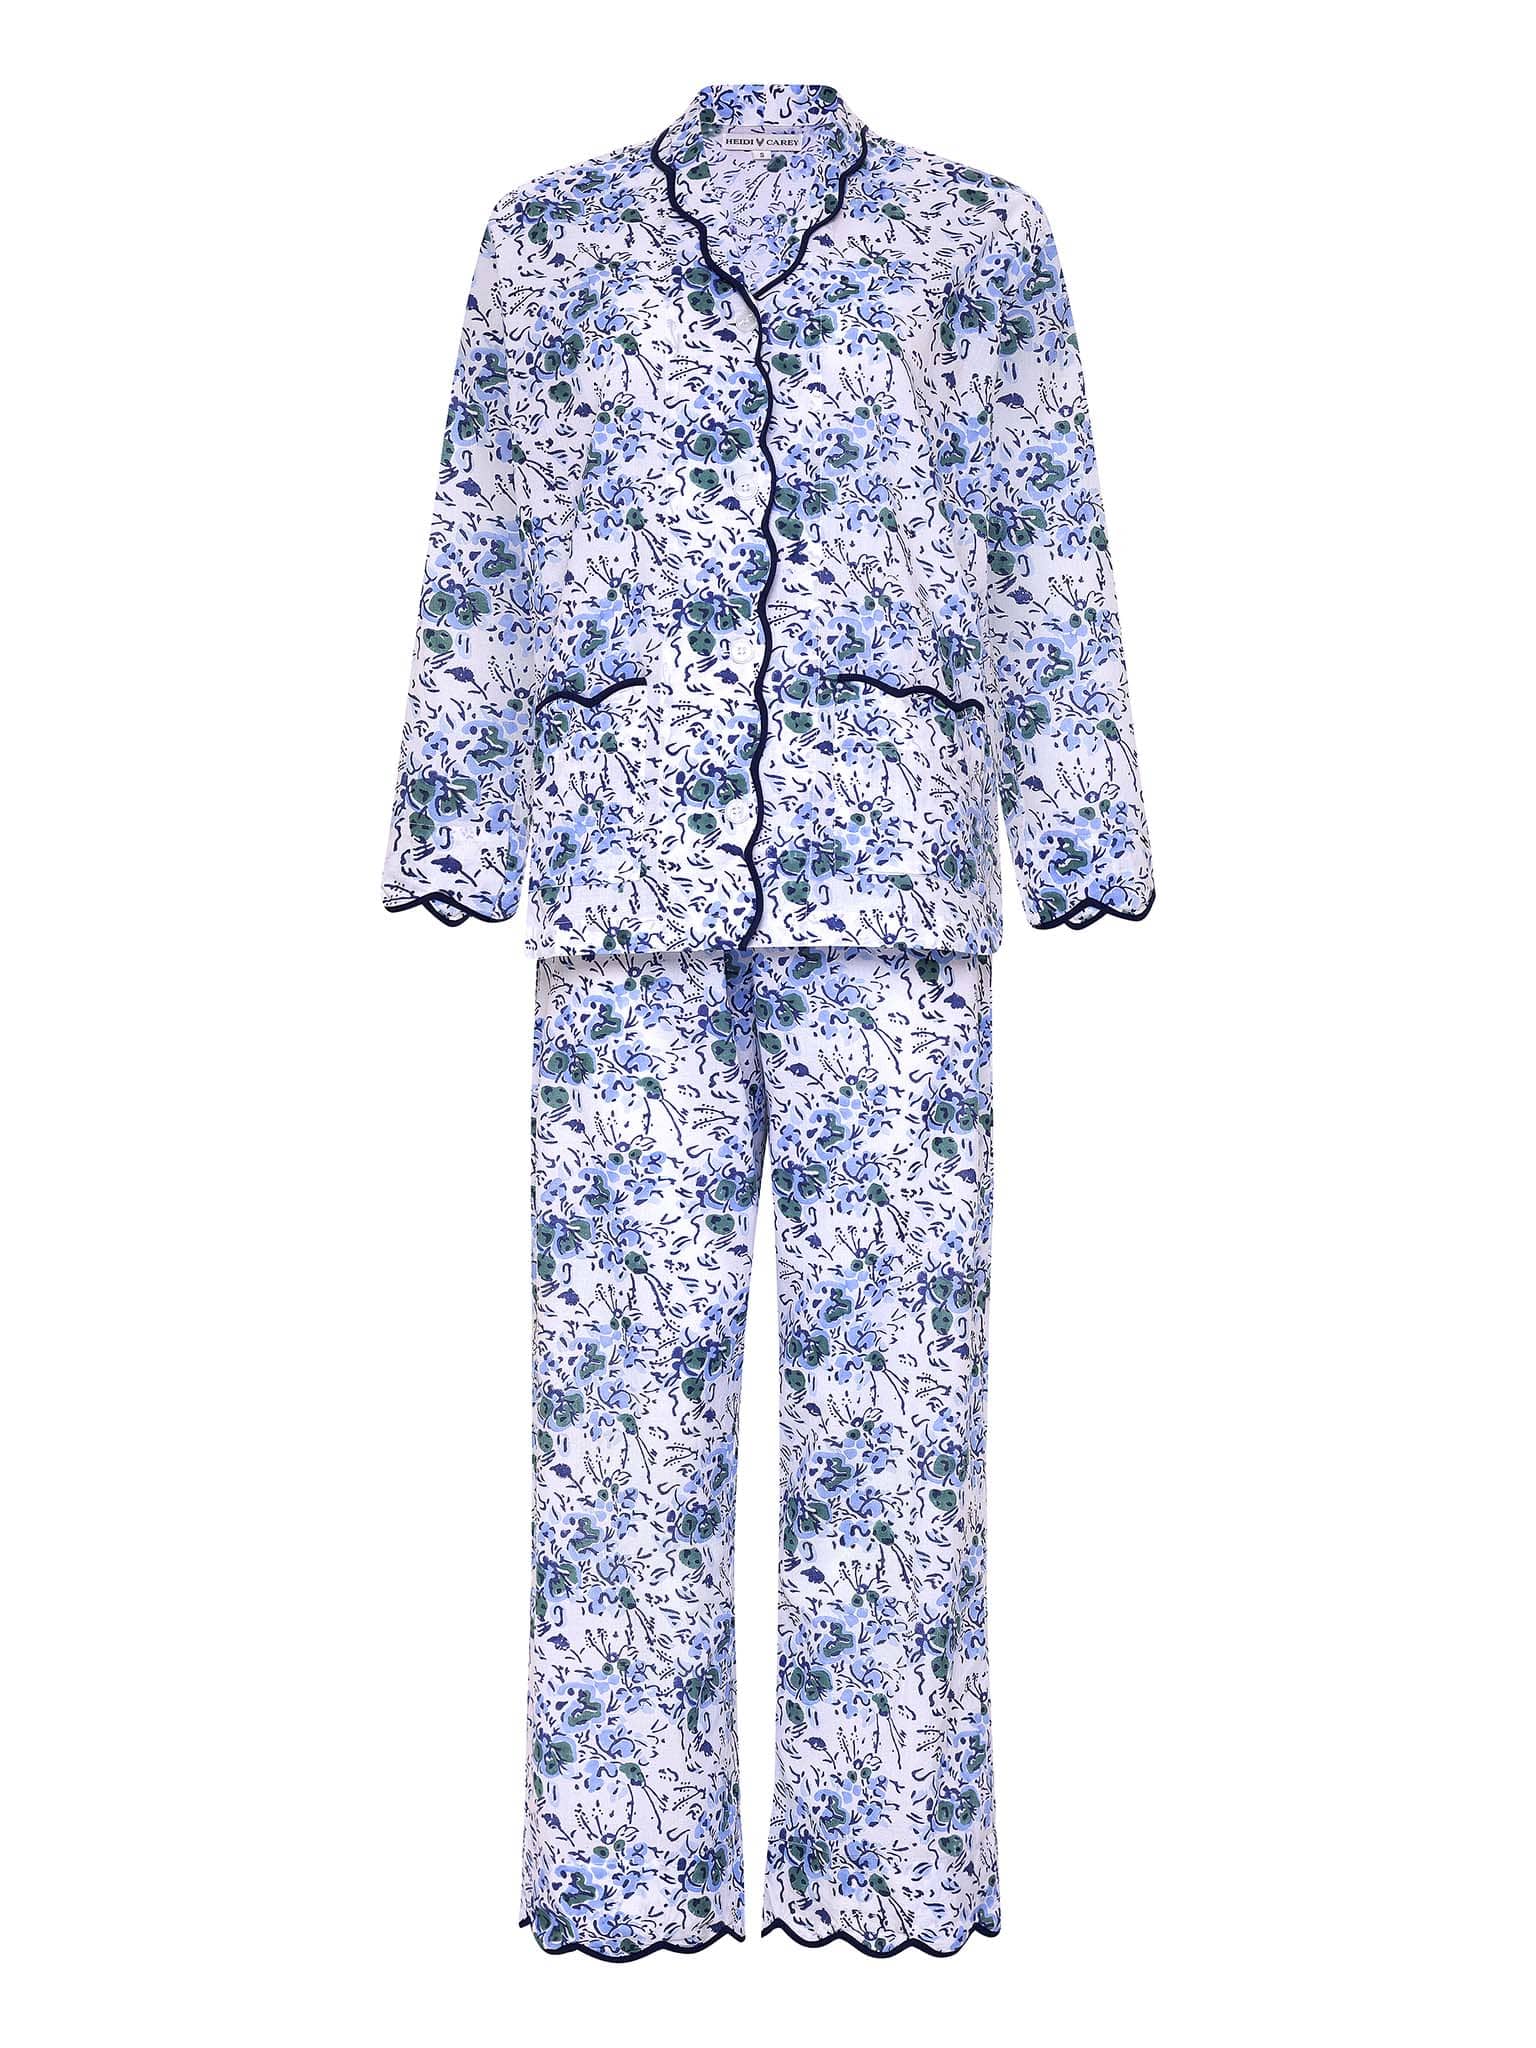 Pyjamas, blue floral and bird print cotton Pyjamas, handmade